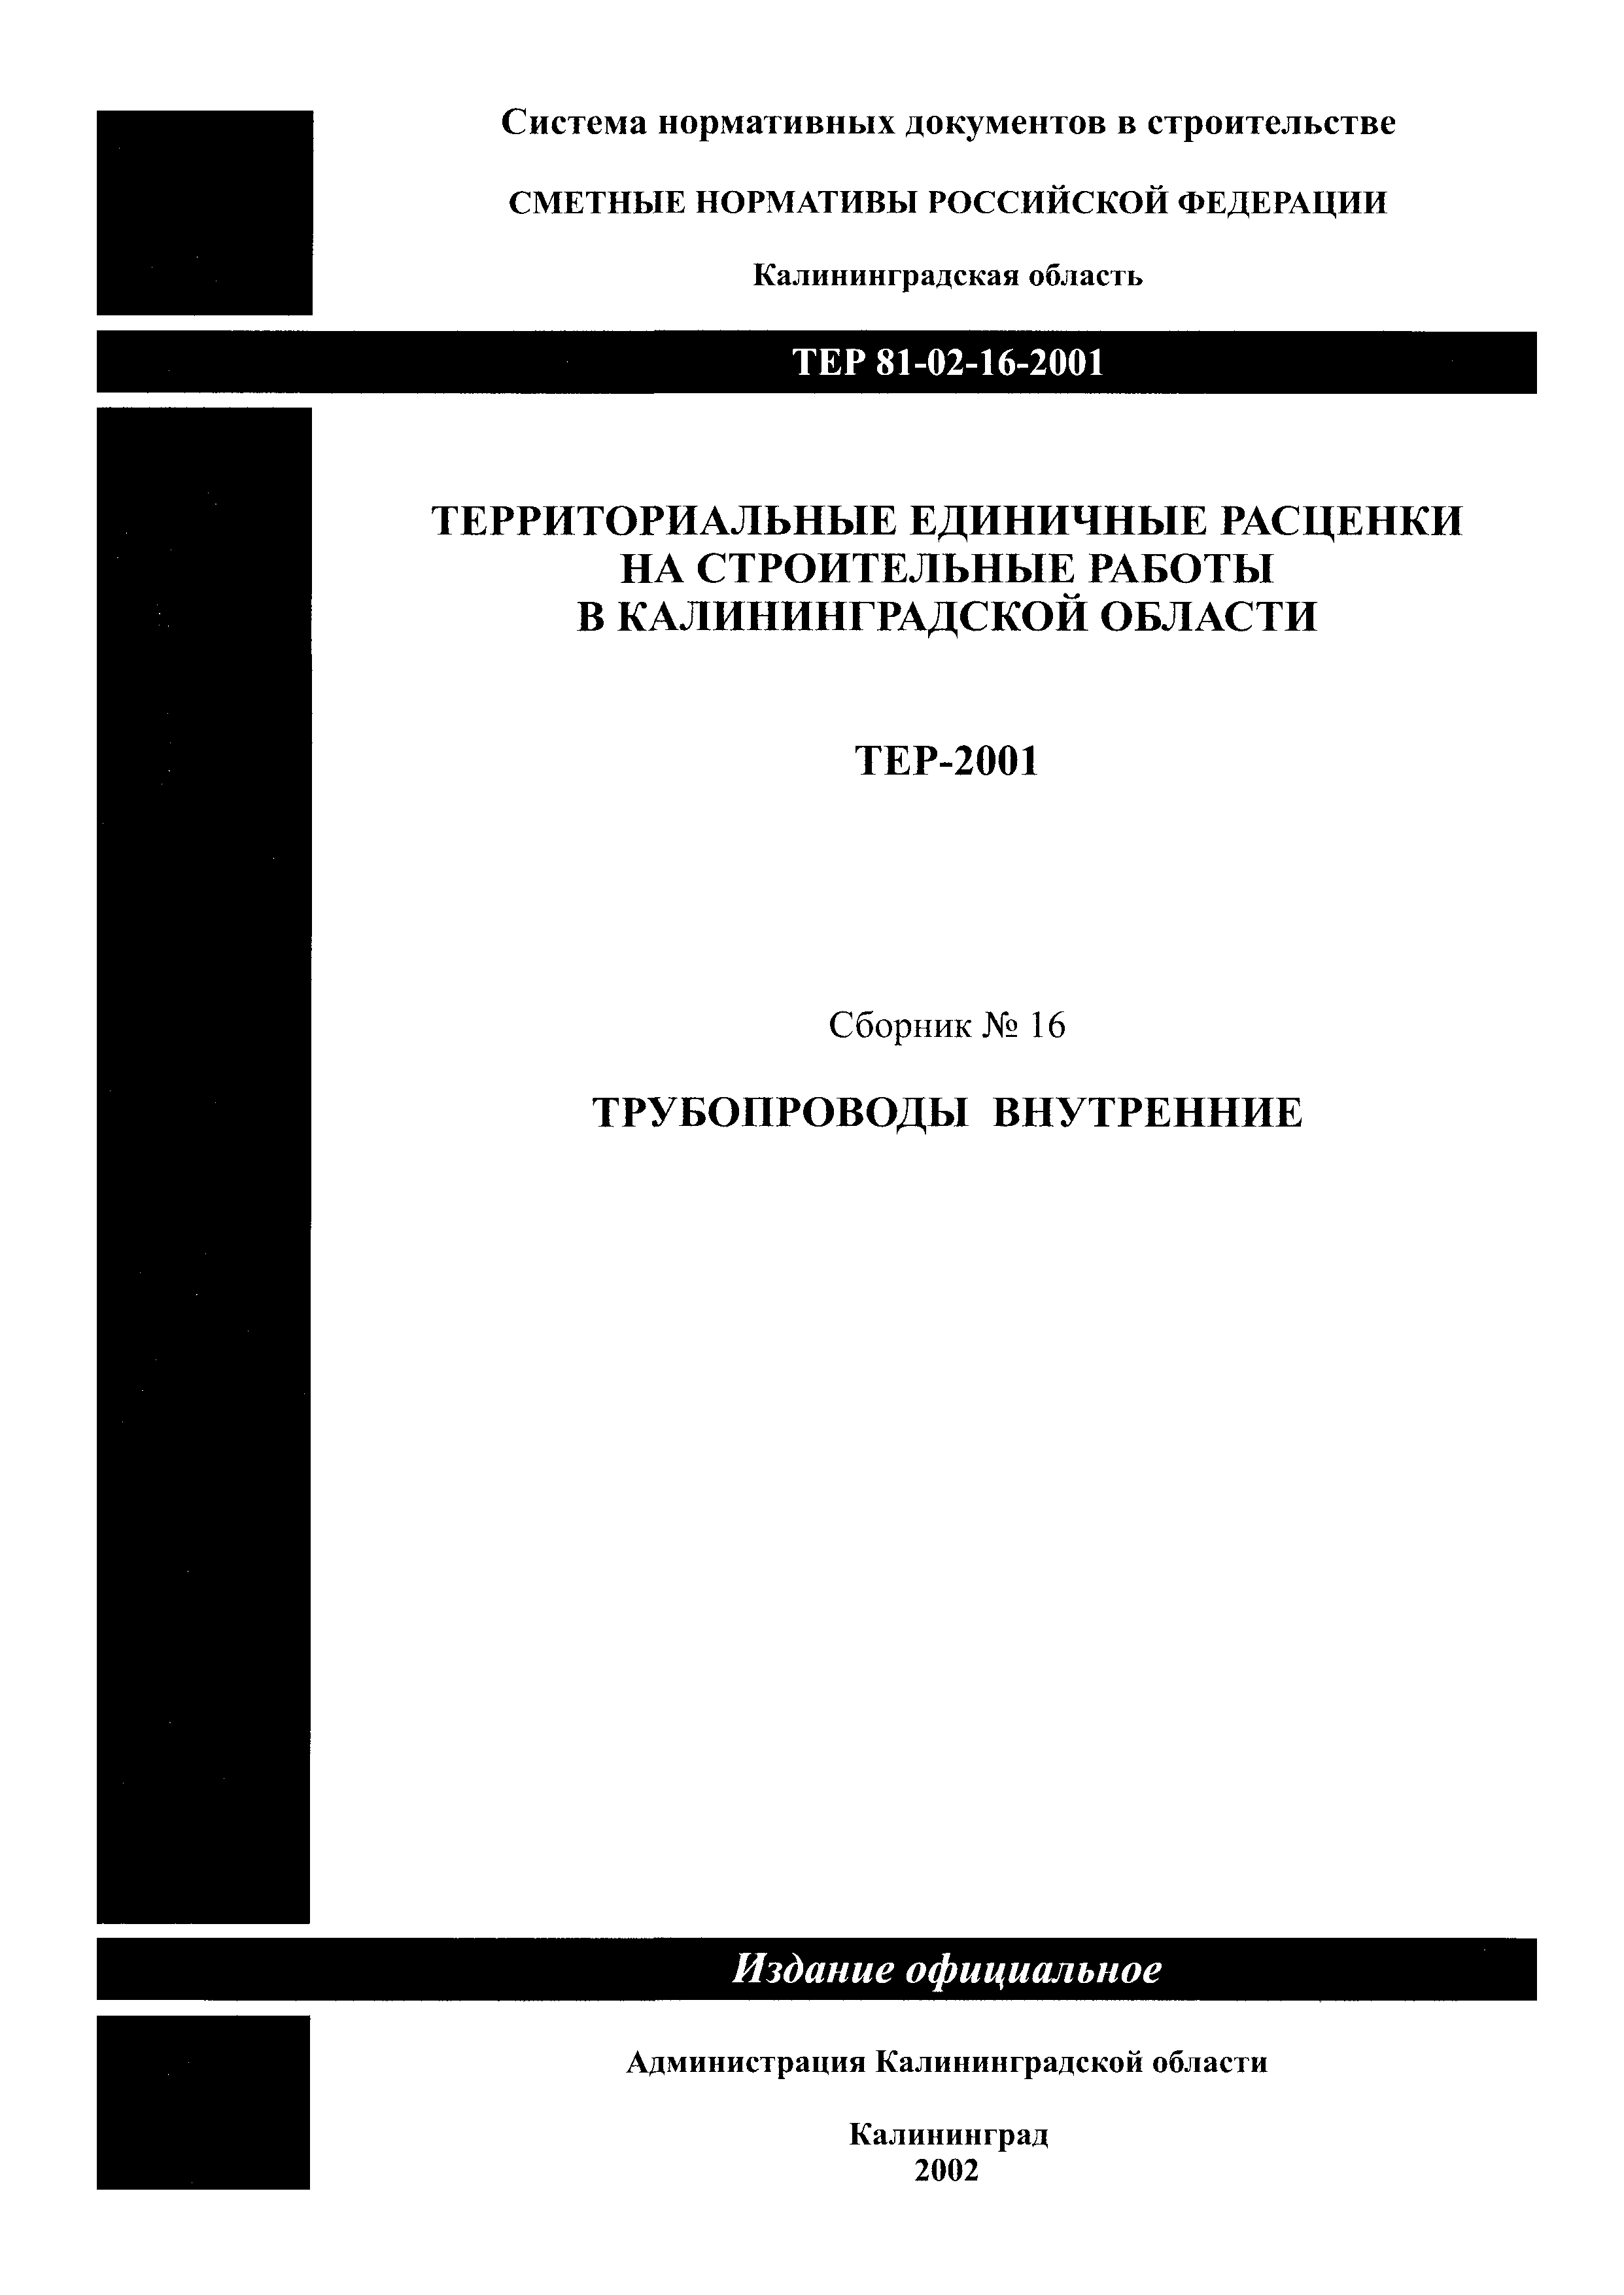 ТЕР Калининградская область 2001-16